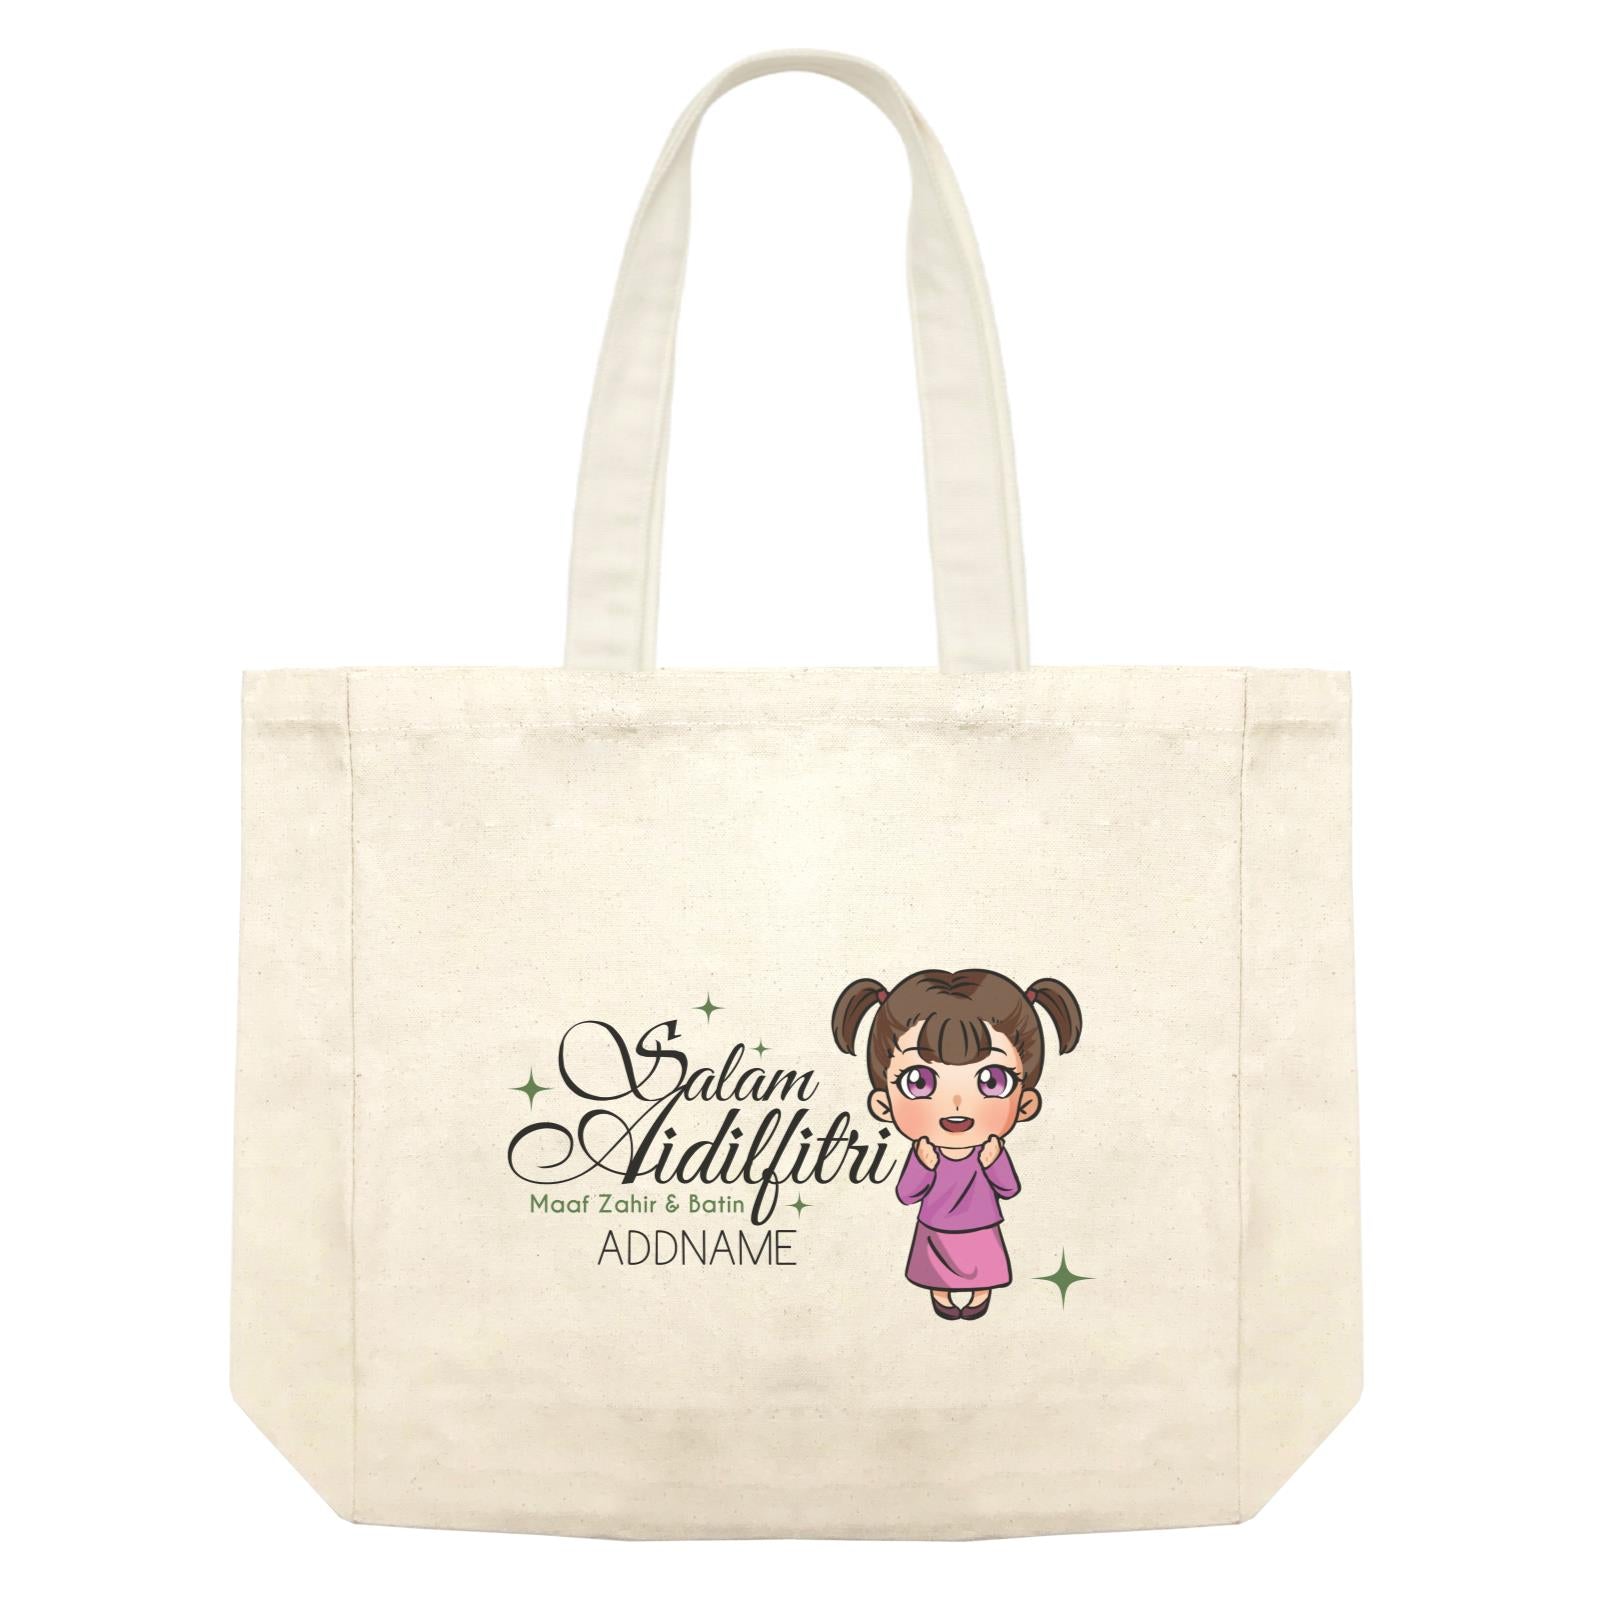 Raya Chibi Wishes Little Girl Addname Wishes Everyone Salam Aidilfitri Maaf Zahir & Batin Accessories Shopping Bag